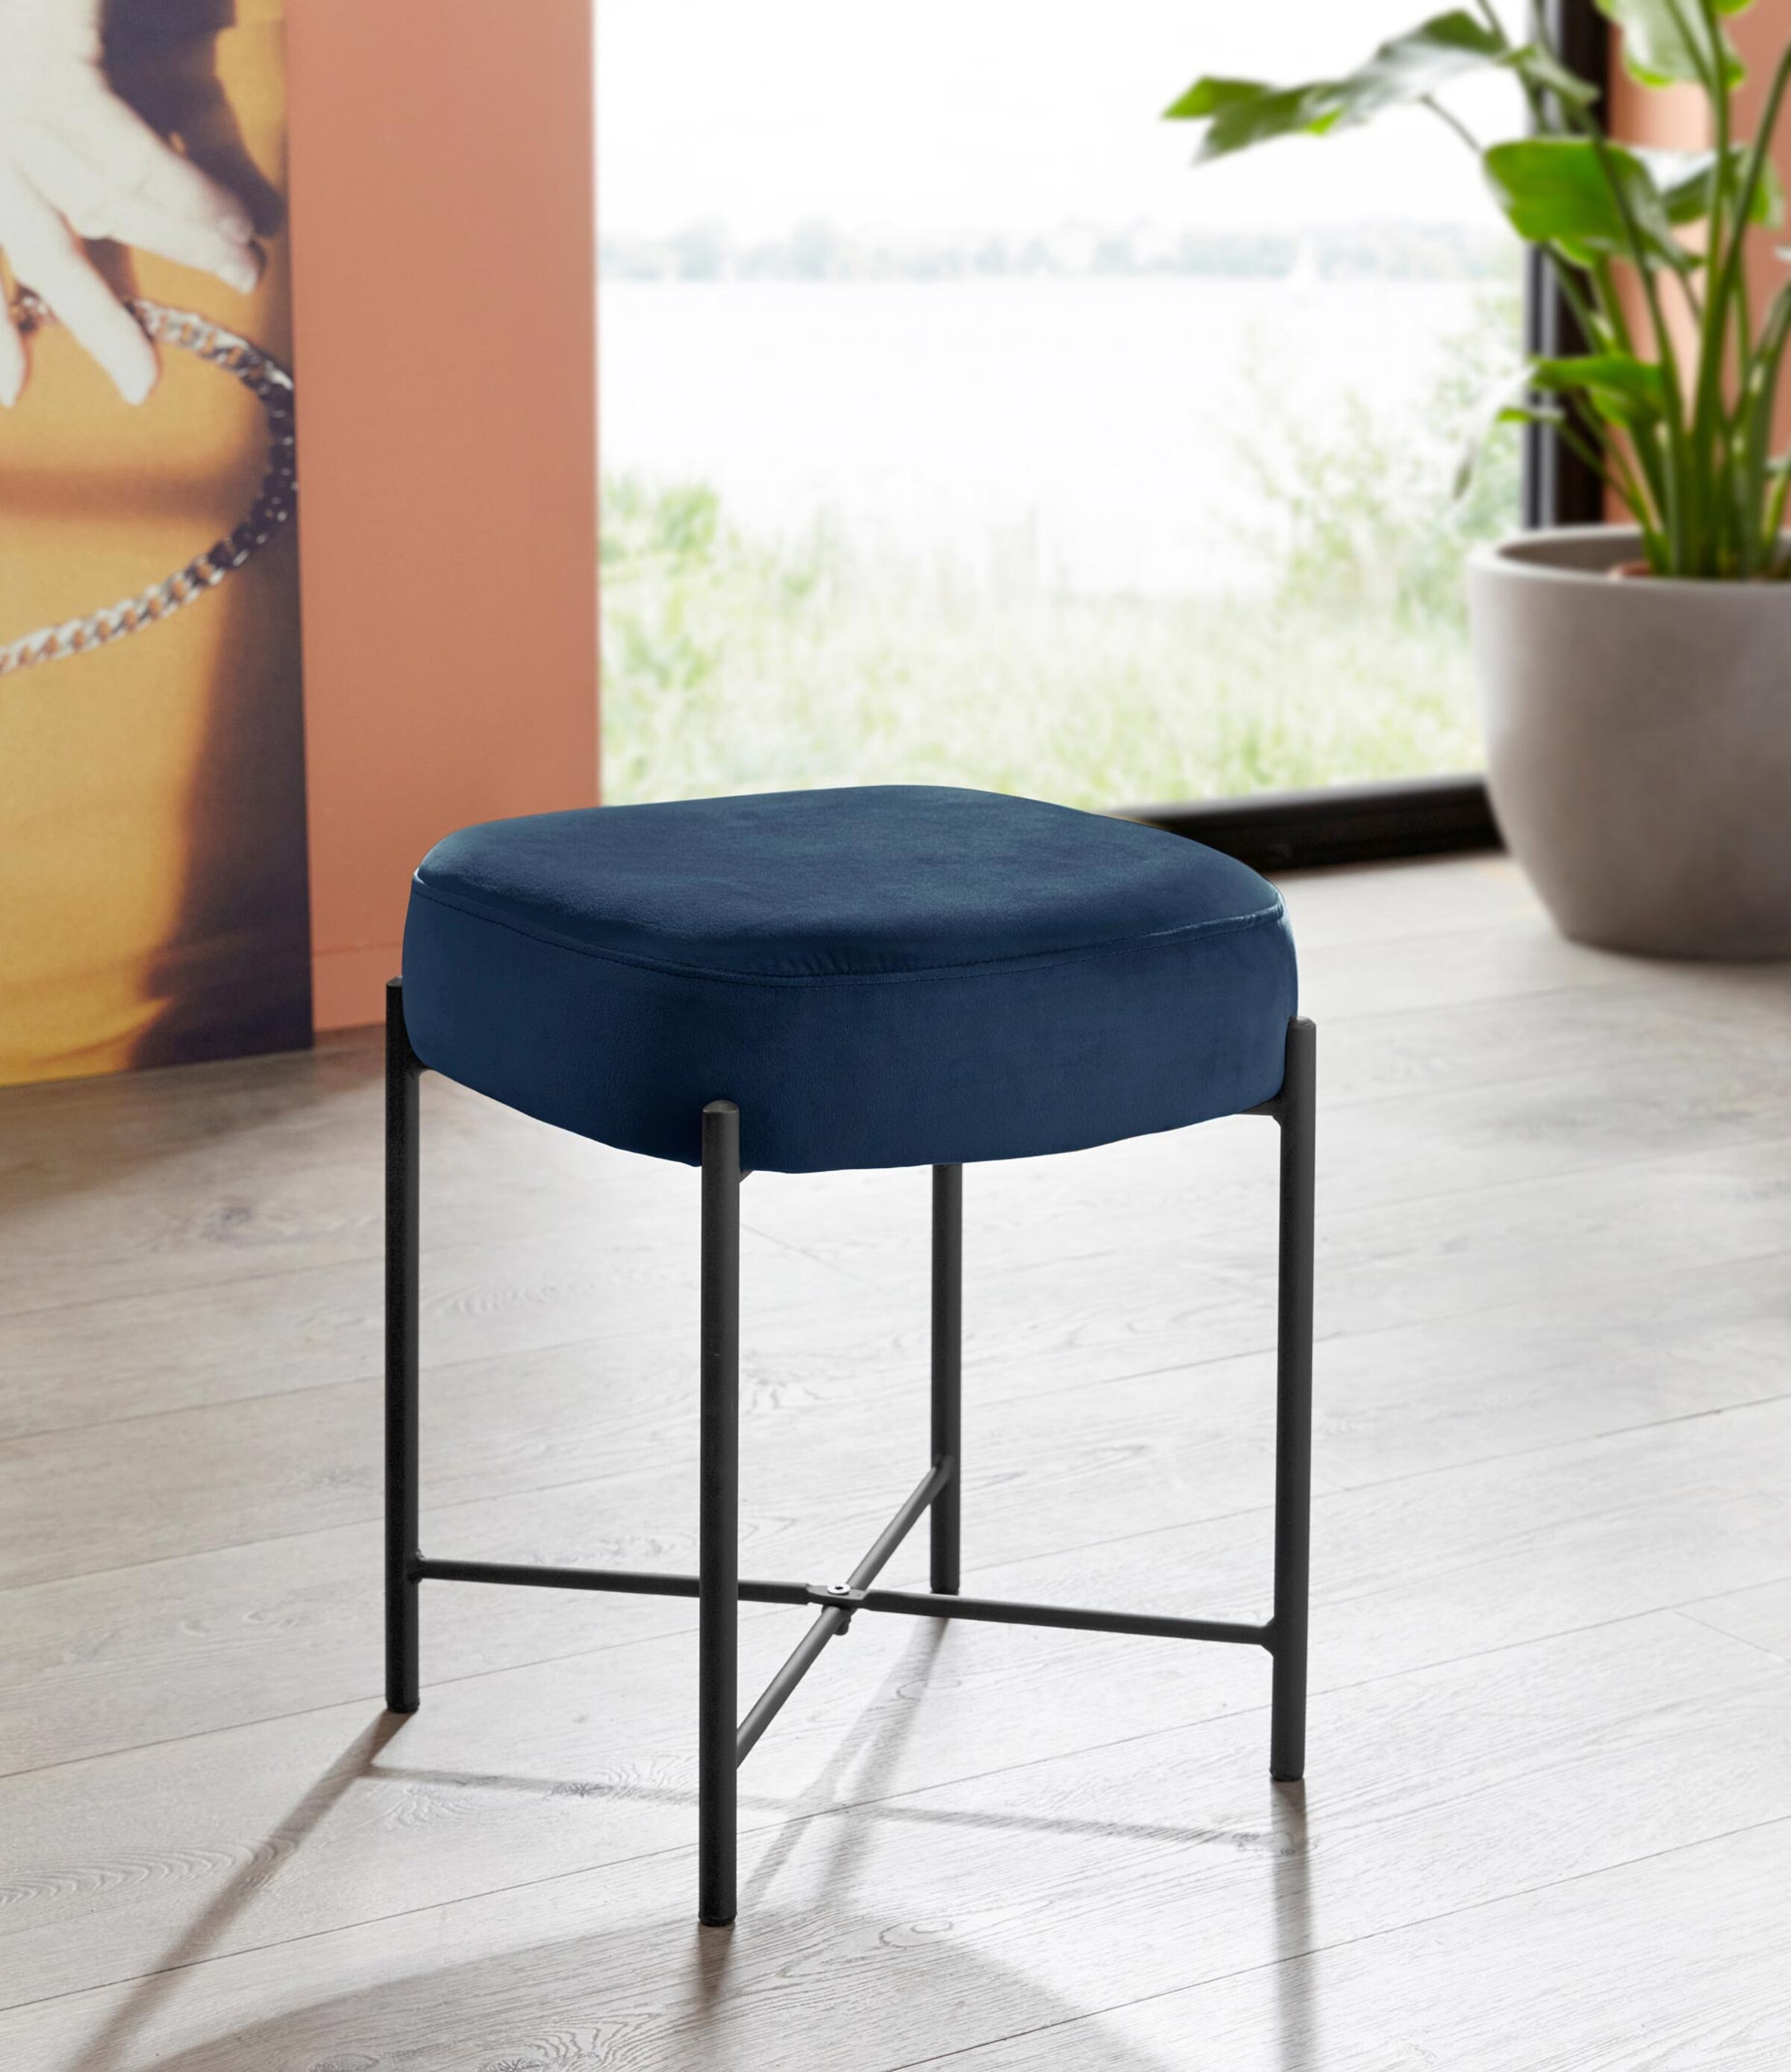 Möbel Bänke & Hocker INOSIGN Sitzhocker in blau/schwarz 